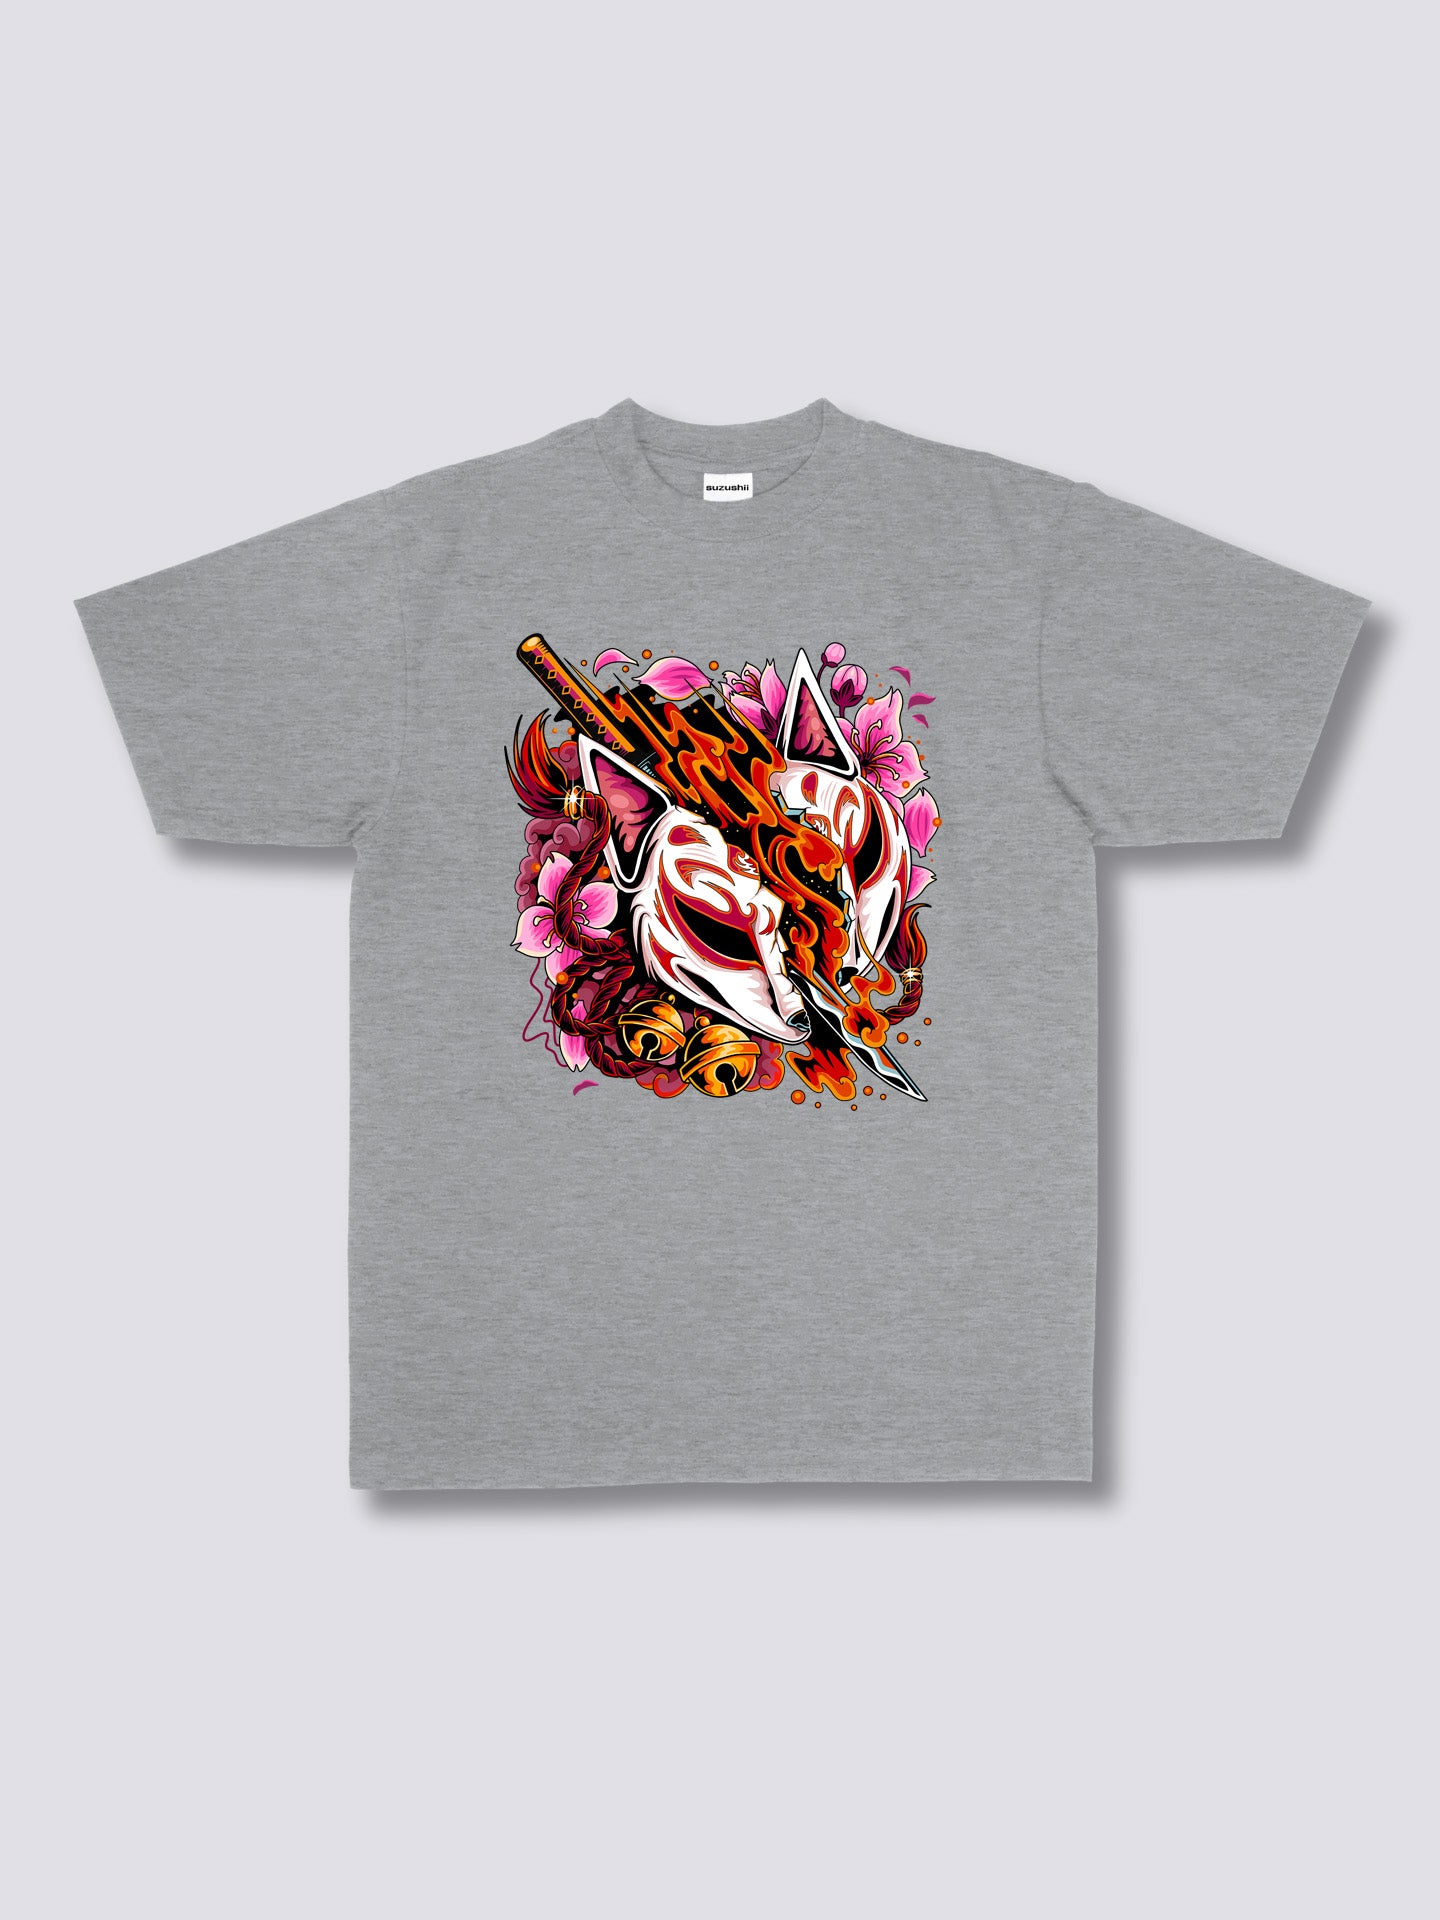 Kitsune Slayer T-shirt